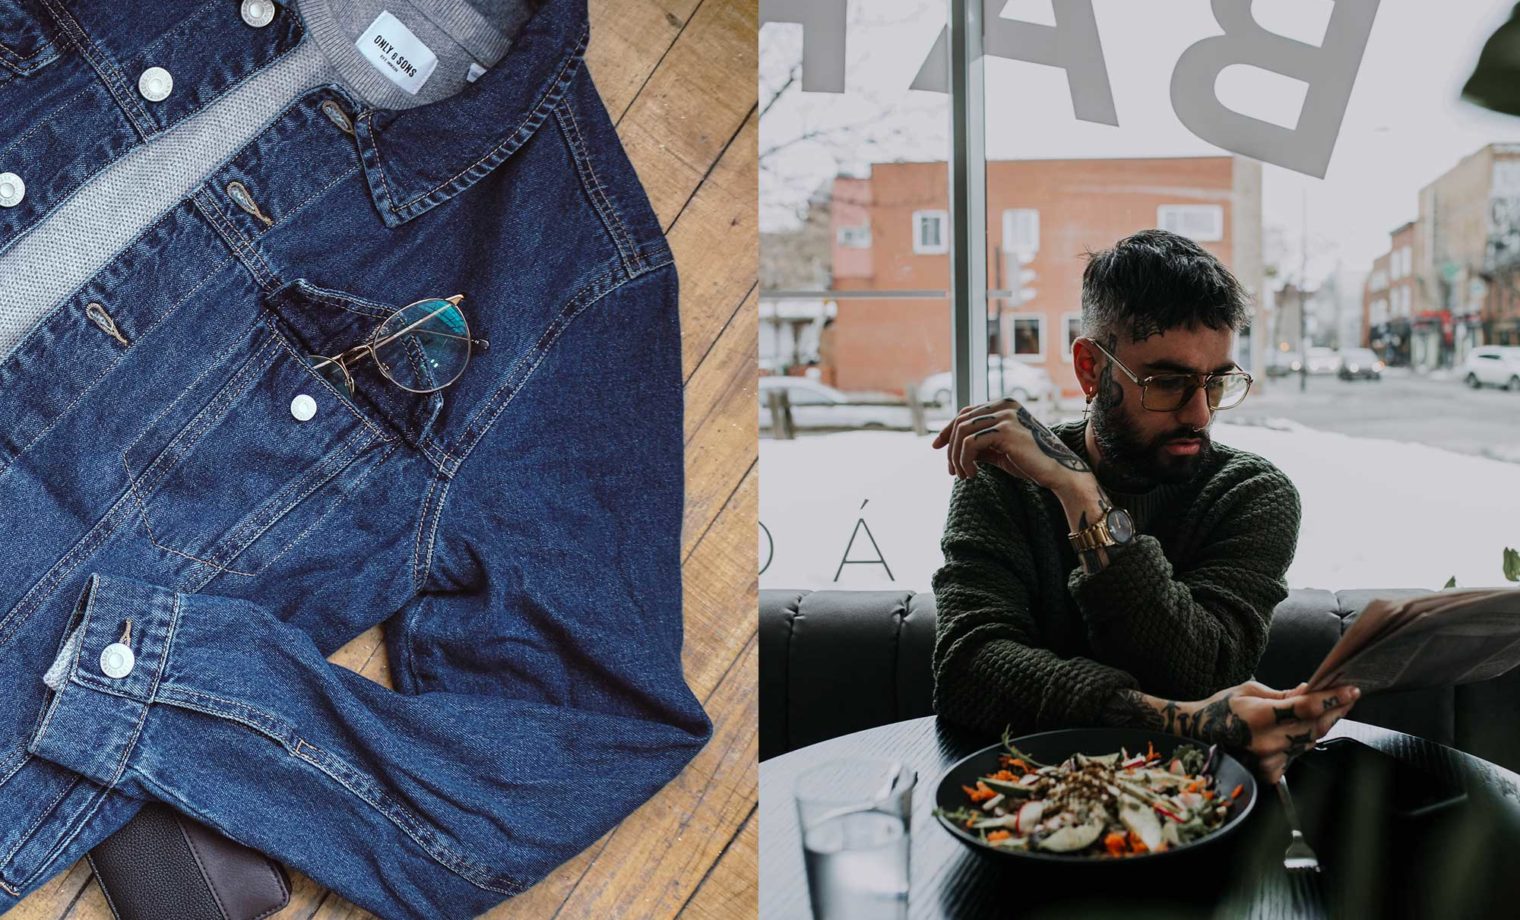 ovrgrnd-social-media-influencer-agency-montreal-bestsellers-jeans